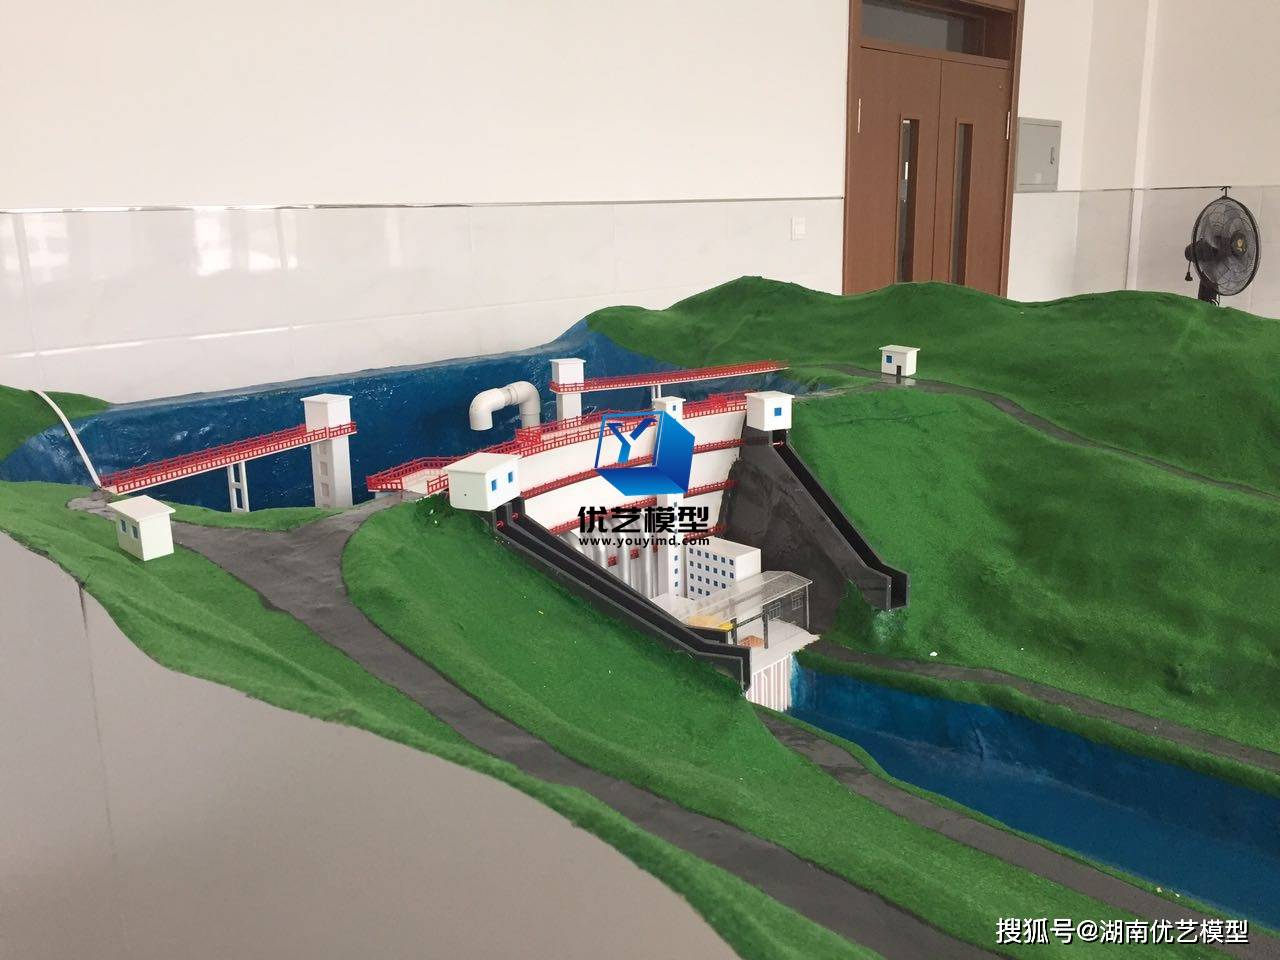 双曲拱坝模型白鹤滩水电站模型湖南省优艺模型